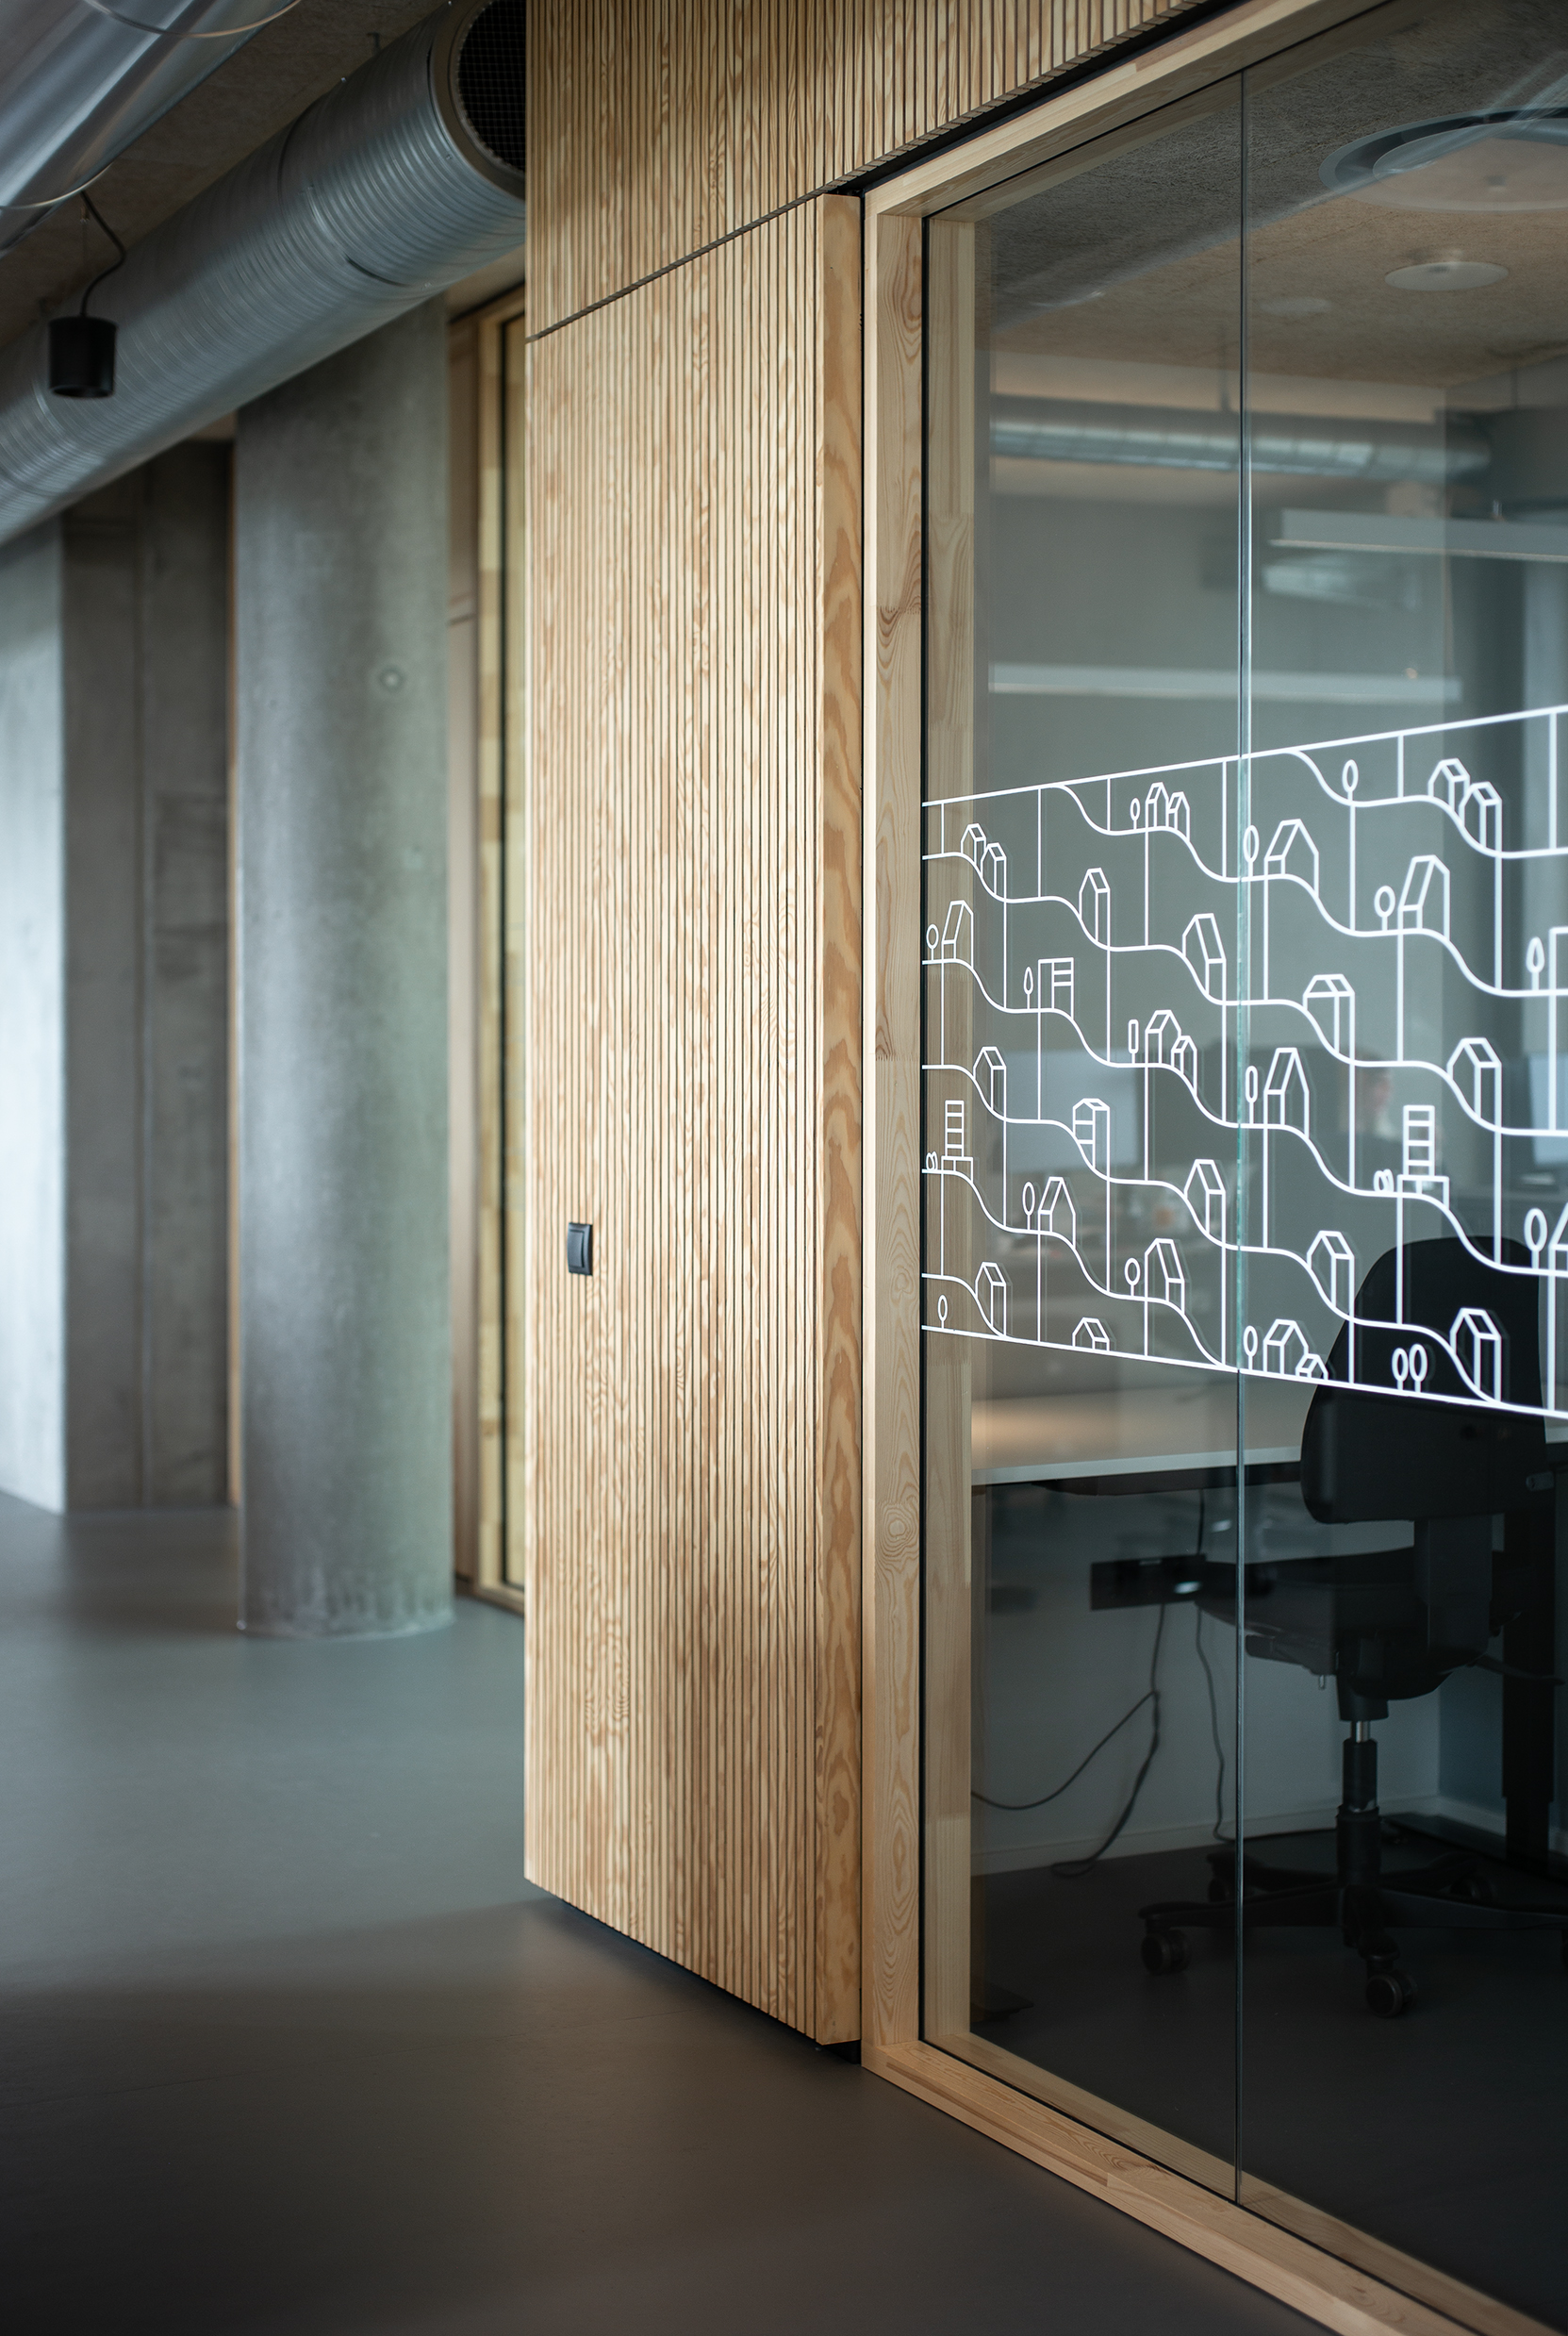 Mødelokaler med træpaneler og transparente vægge